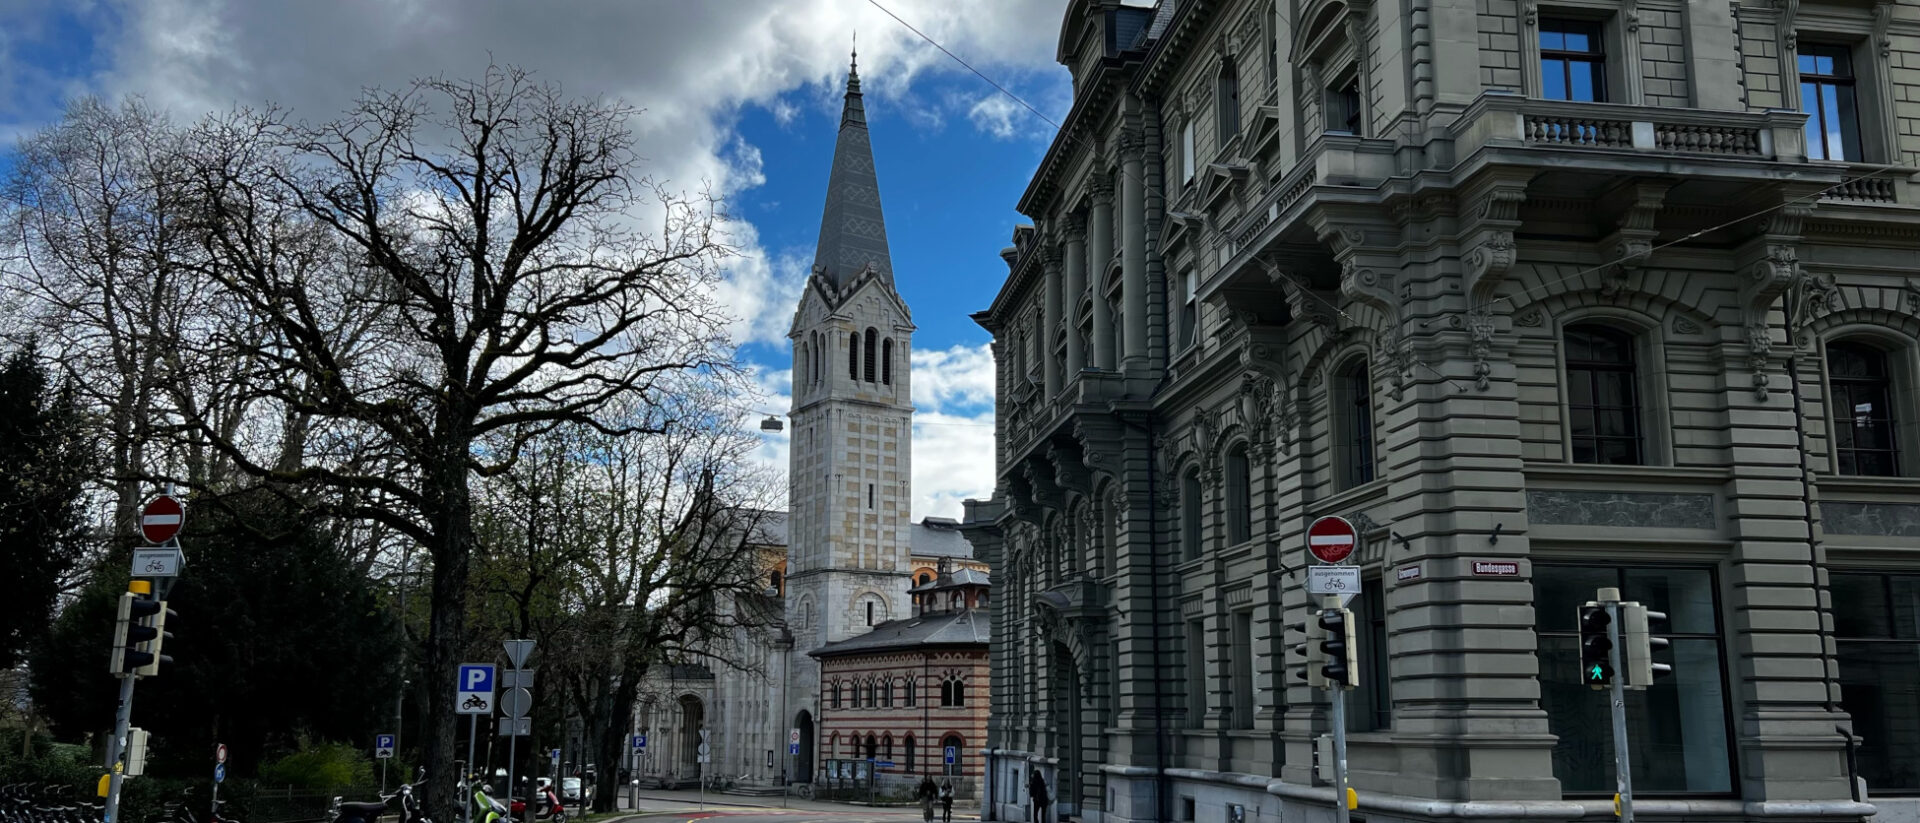 Dreifaltigkeitskirche Bern